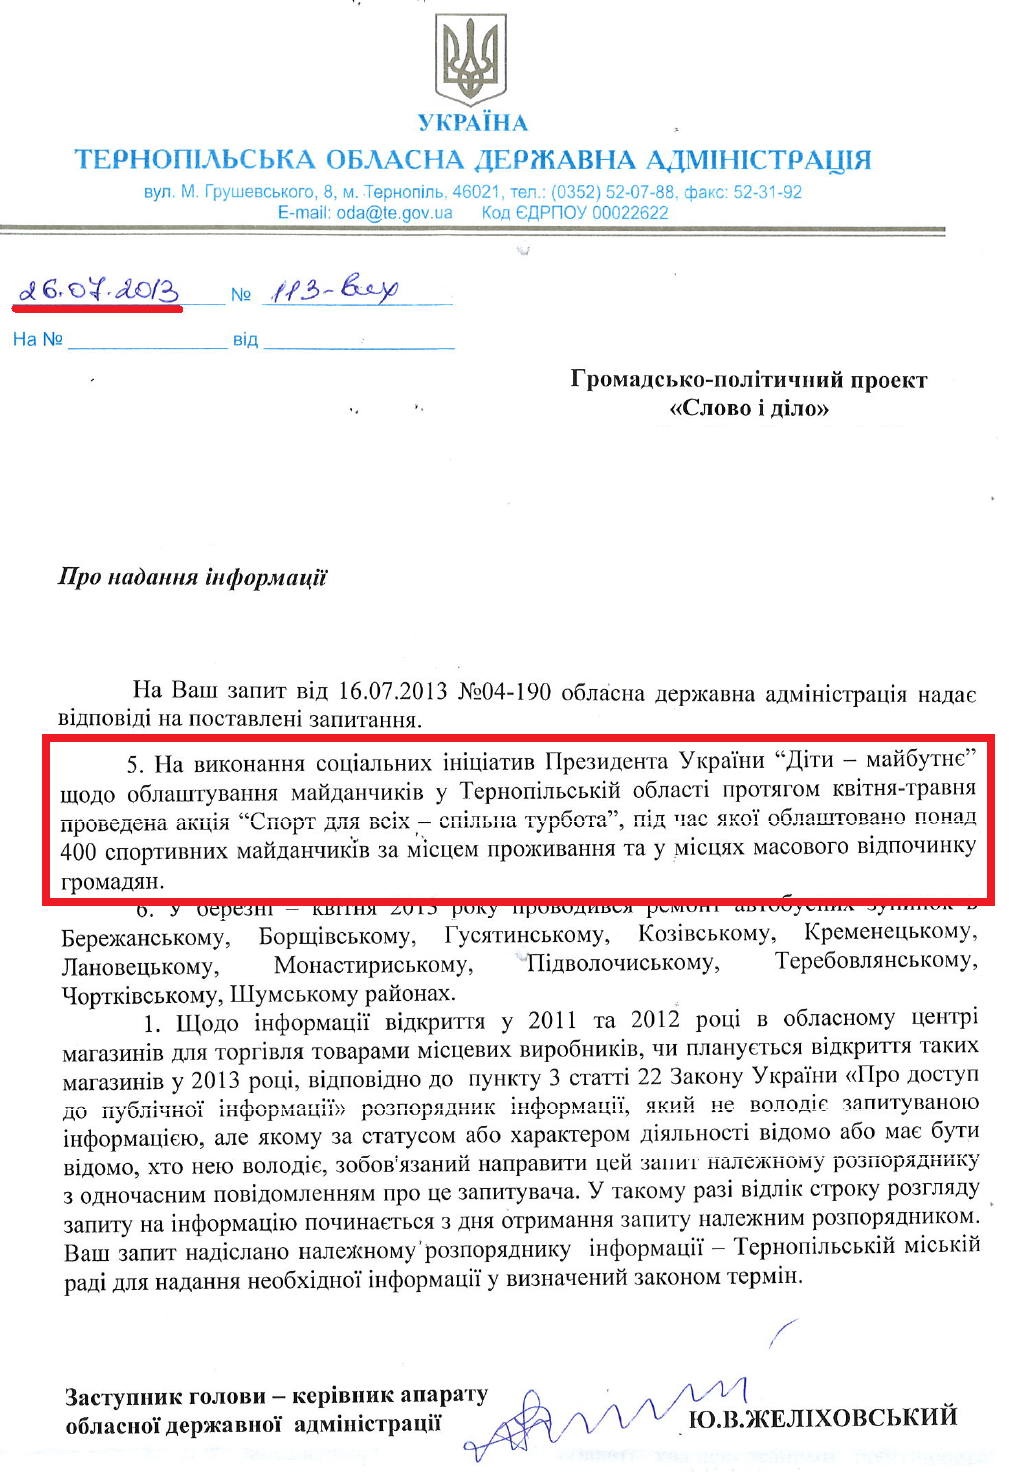 Лист Заступника голови Тернопільської ОДА Ю.В.Желіховського від 26 липня 2013 року